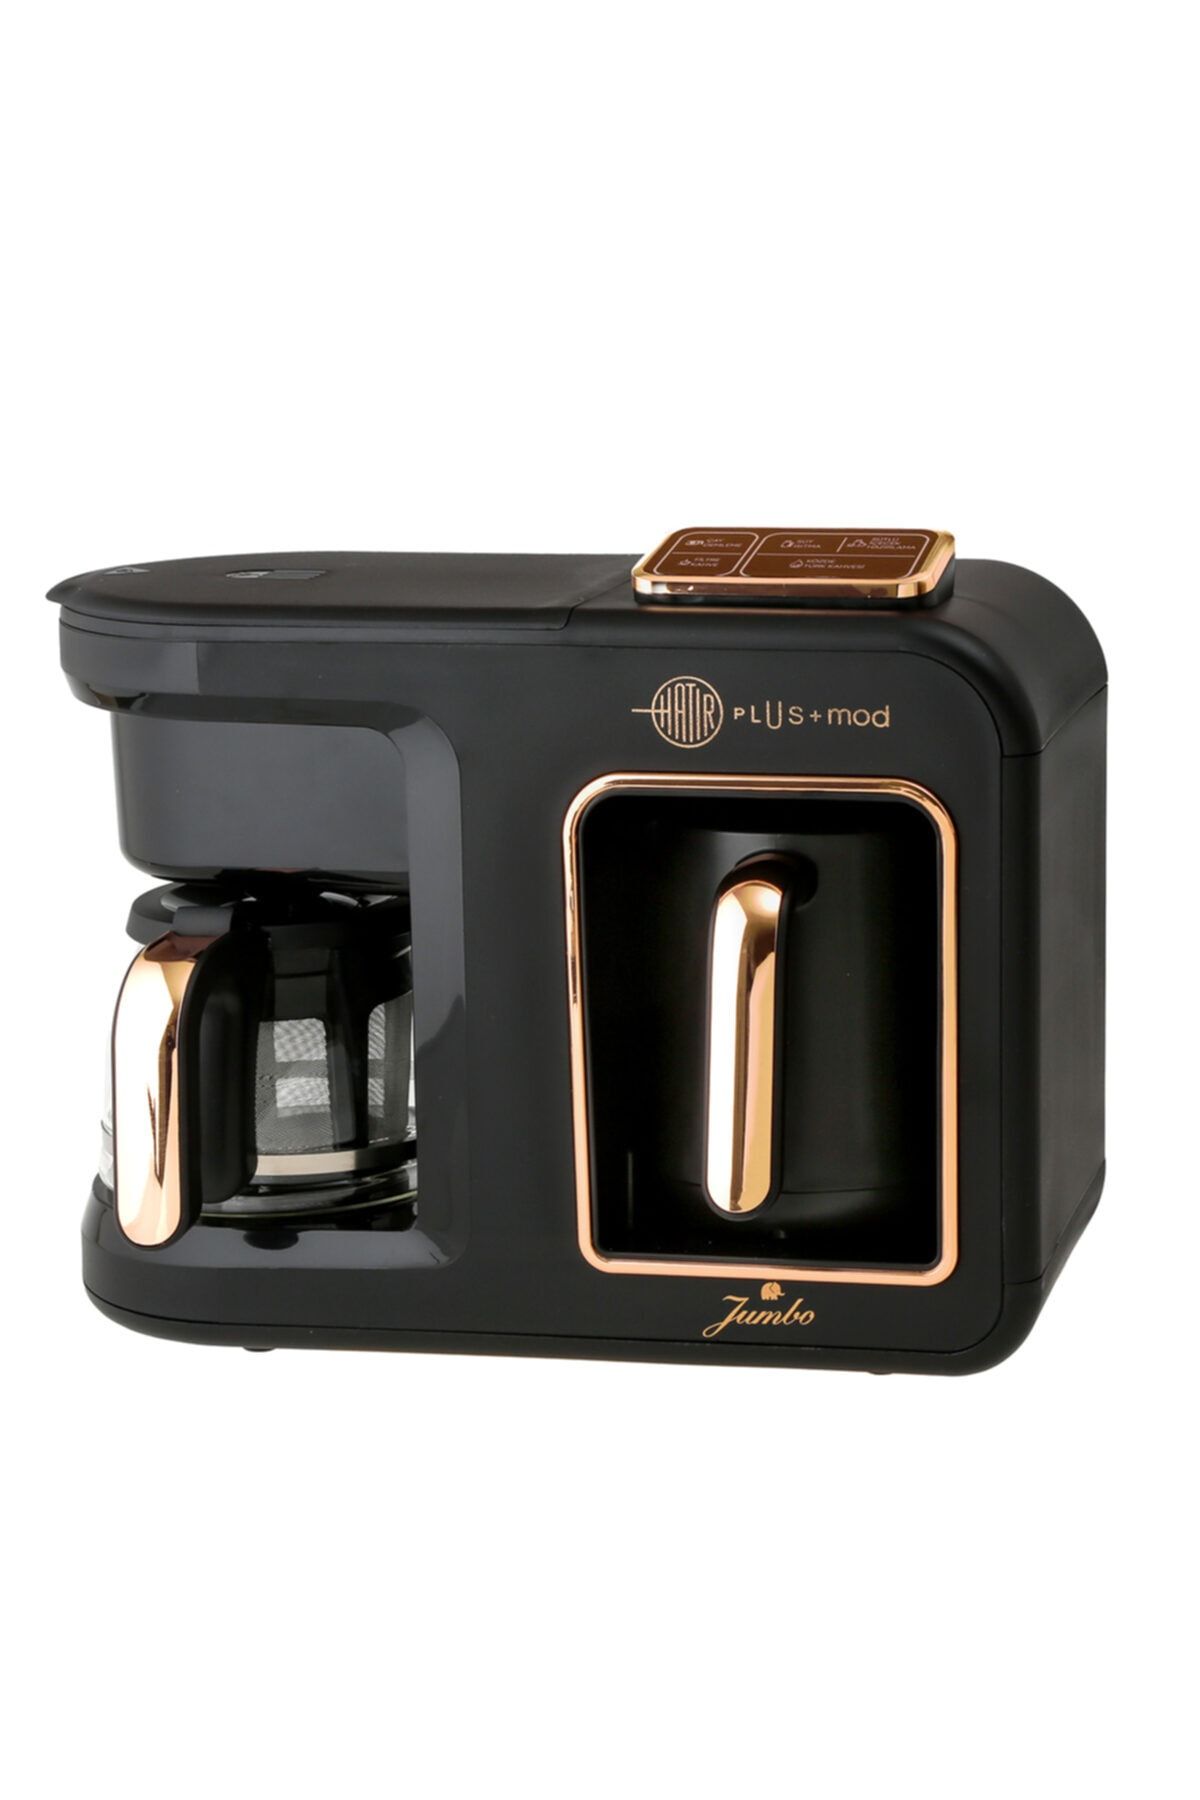 Jumbo Hatır Plus Mod 5 In 1 Black Copper Çay Ve Kahve Makinesi